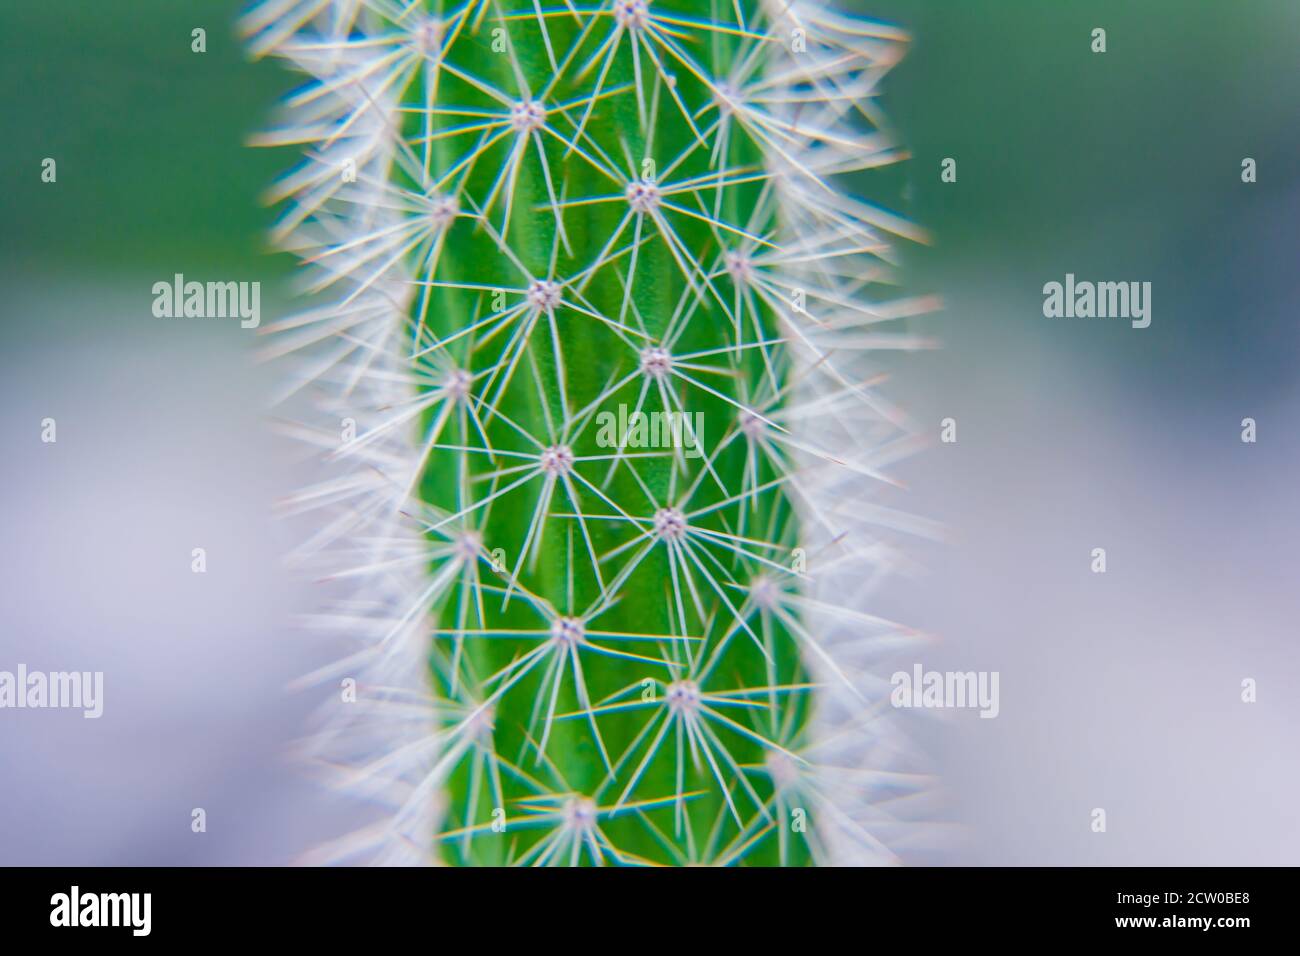 Macro proche des épines d'un cactus avec foyer sélectif. Cactus avec longs épines pointues rouges avec foyer sélectif. Espace de copie. Banque D'Images